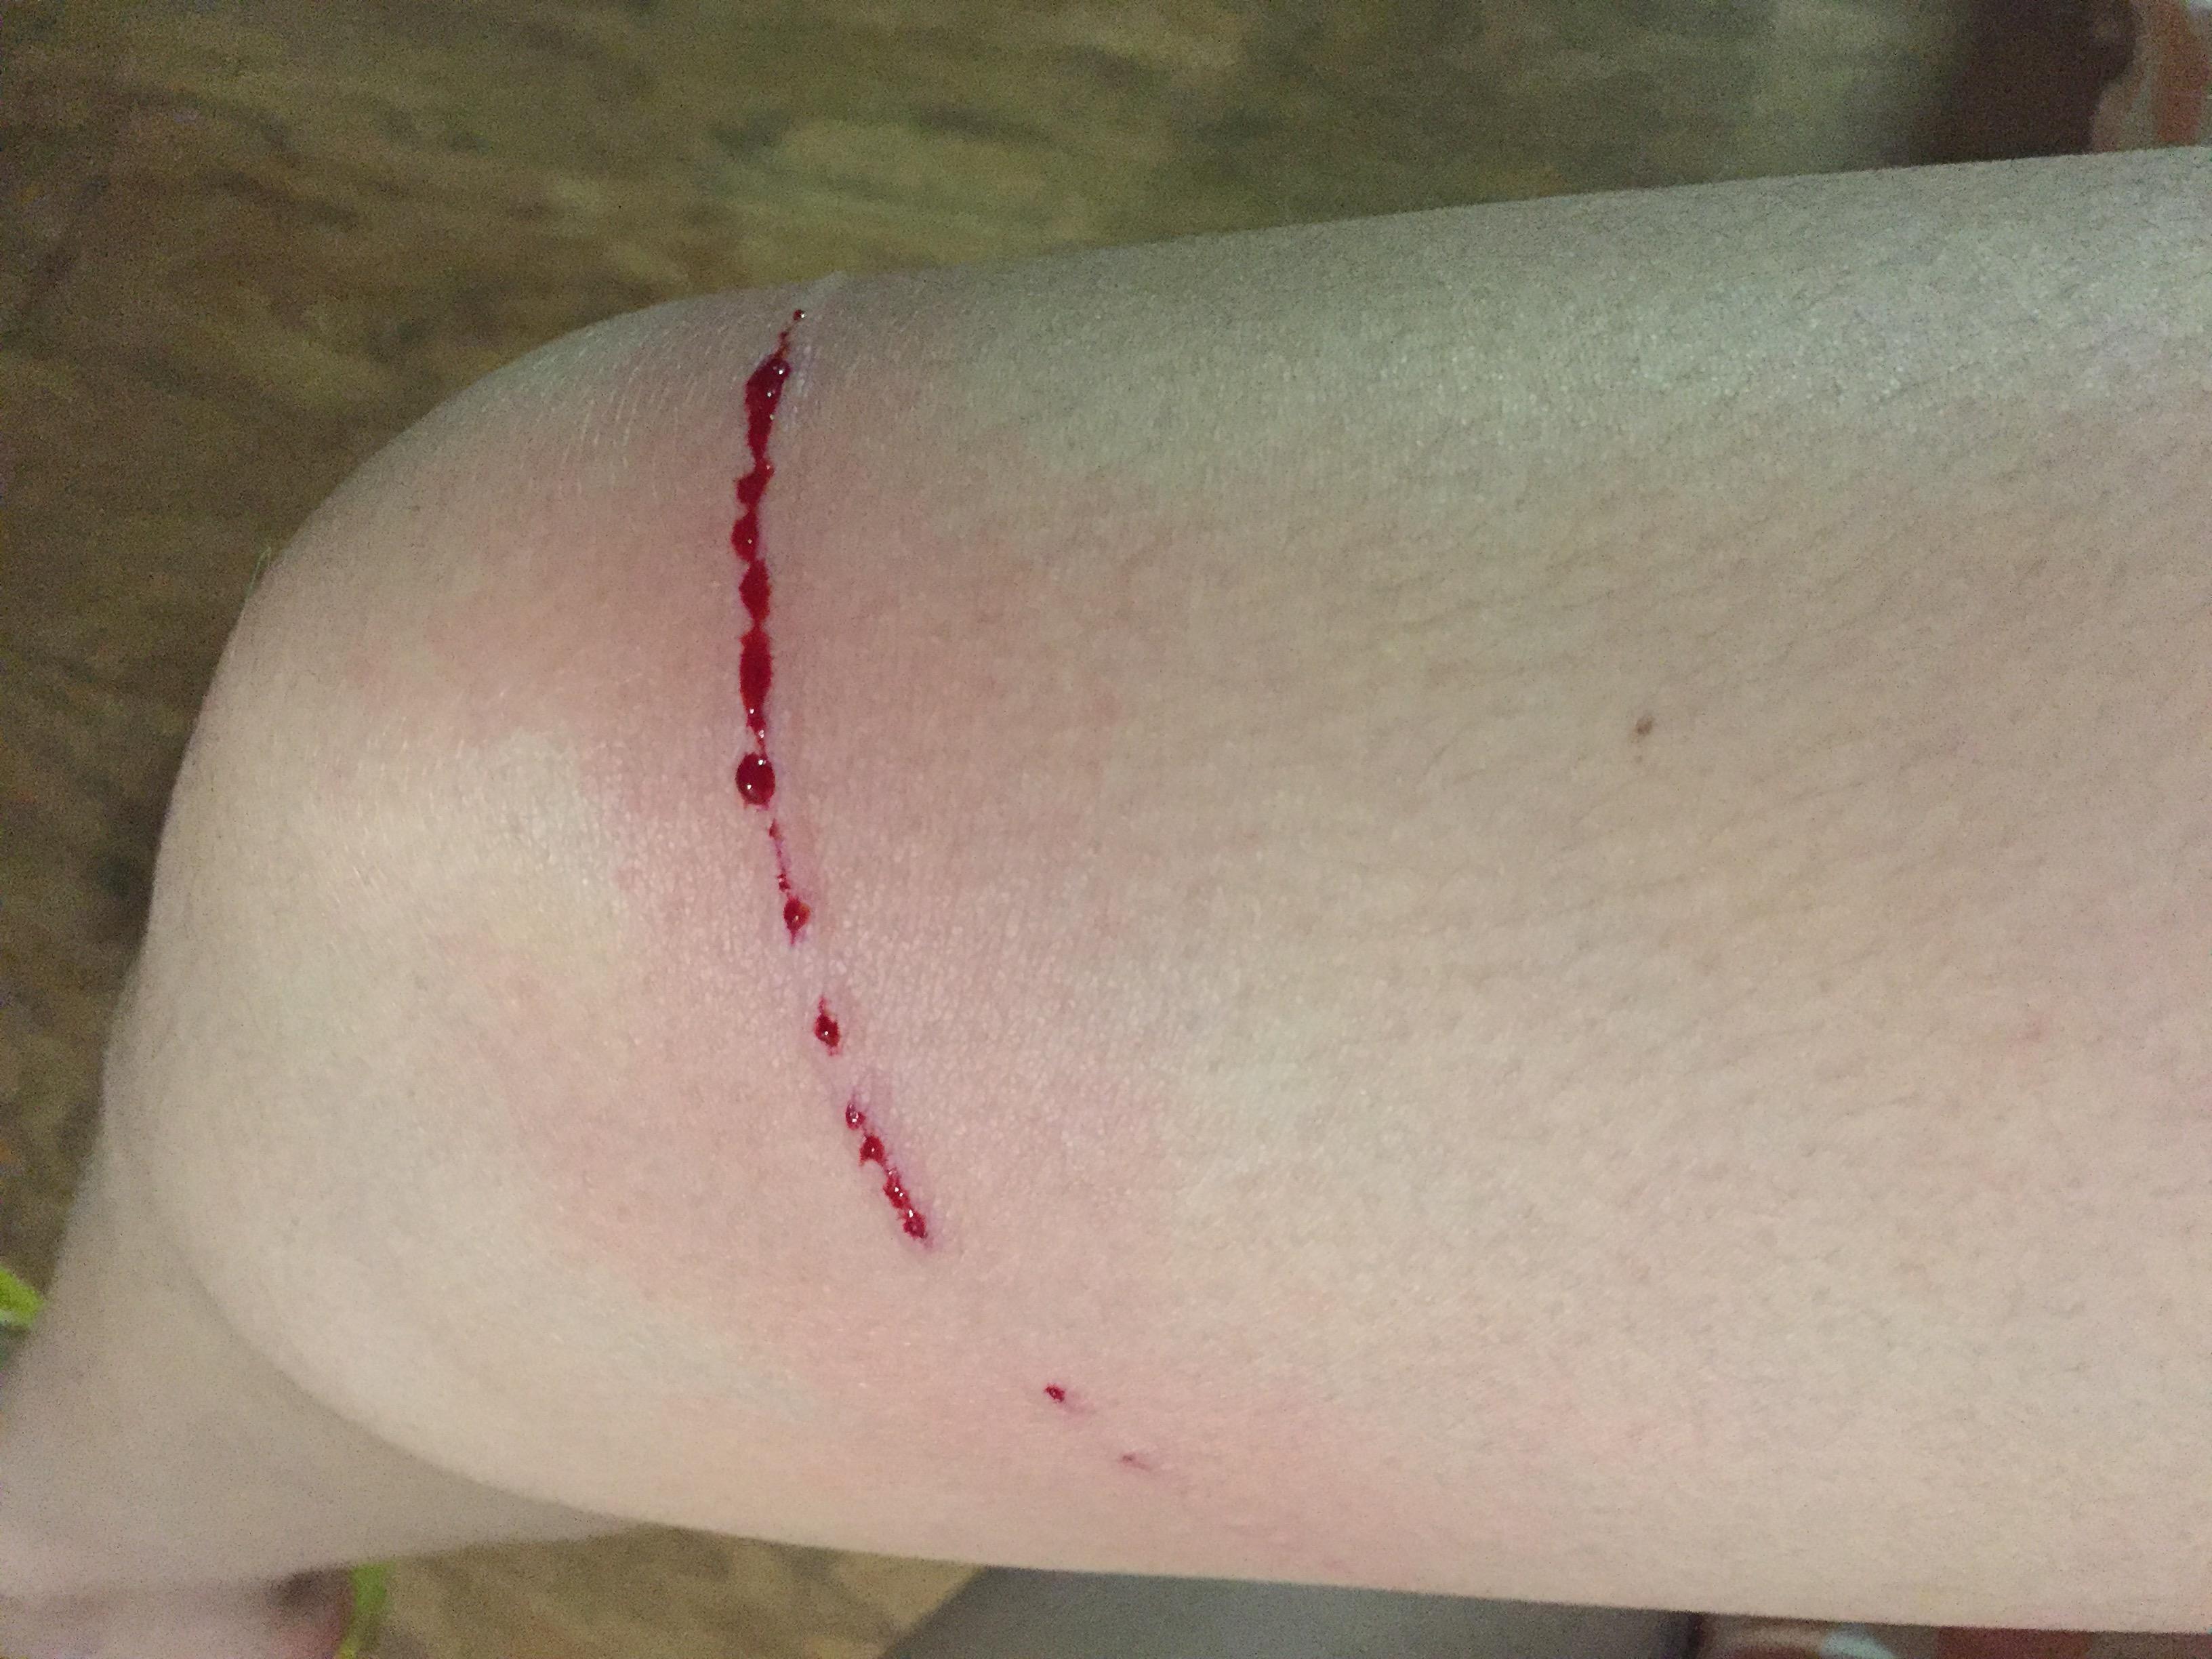 请问昨天晚上被自家的英短抓了一条比较大的伤口,猫咪半年内打过